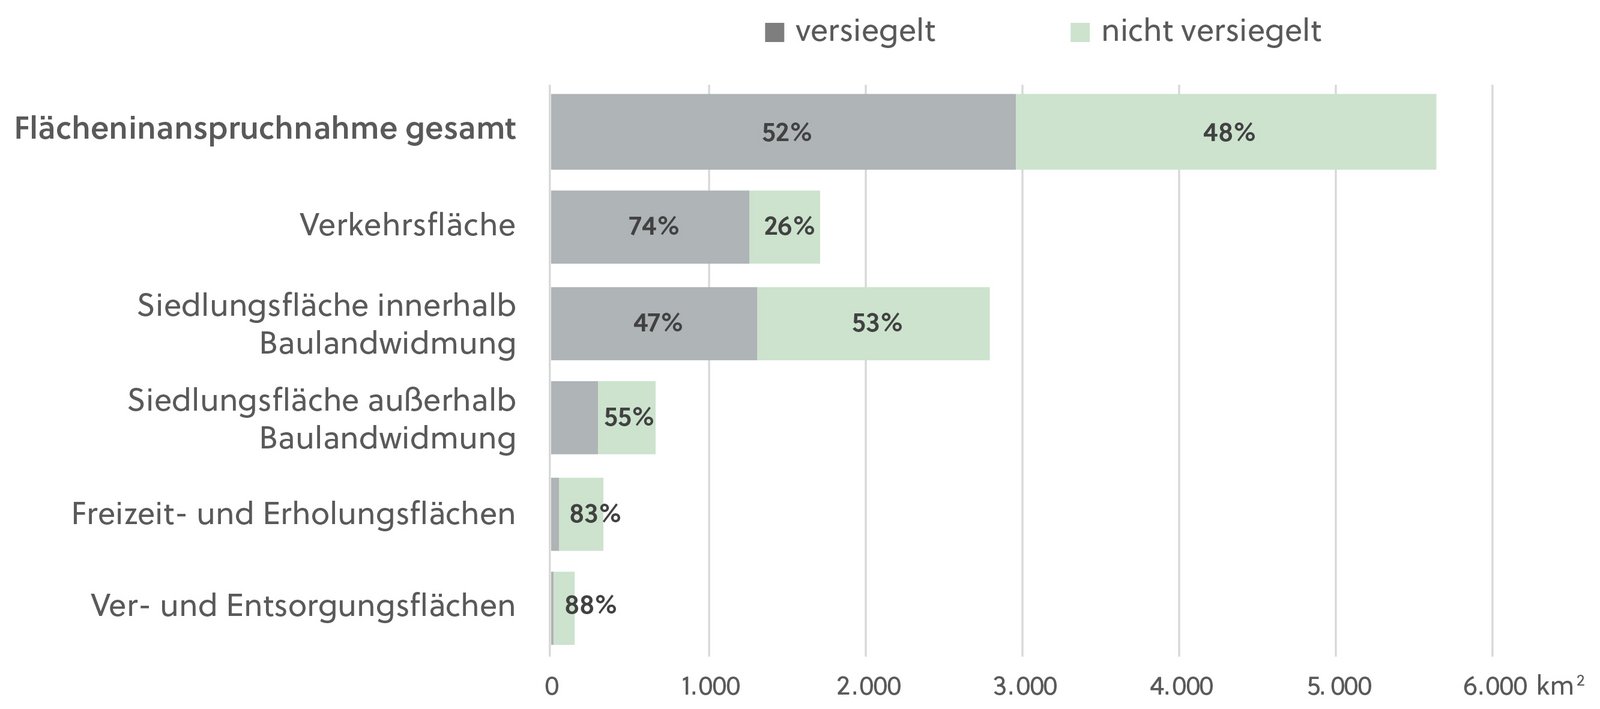 Abbildung mit dem Anteil der Versiegelung an der Flächeninanspruchnahme in Österreich.